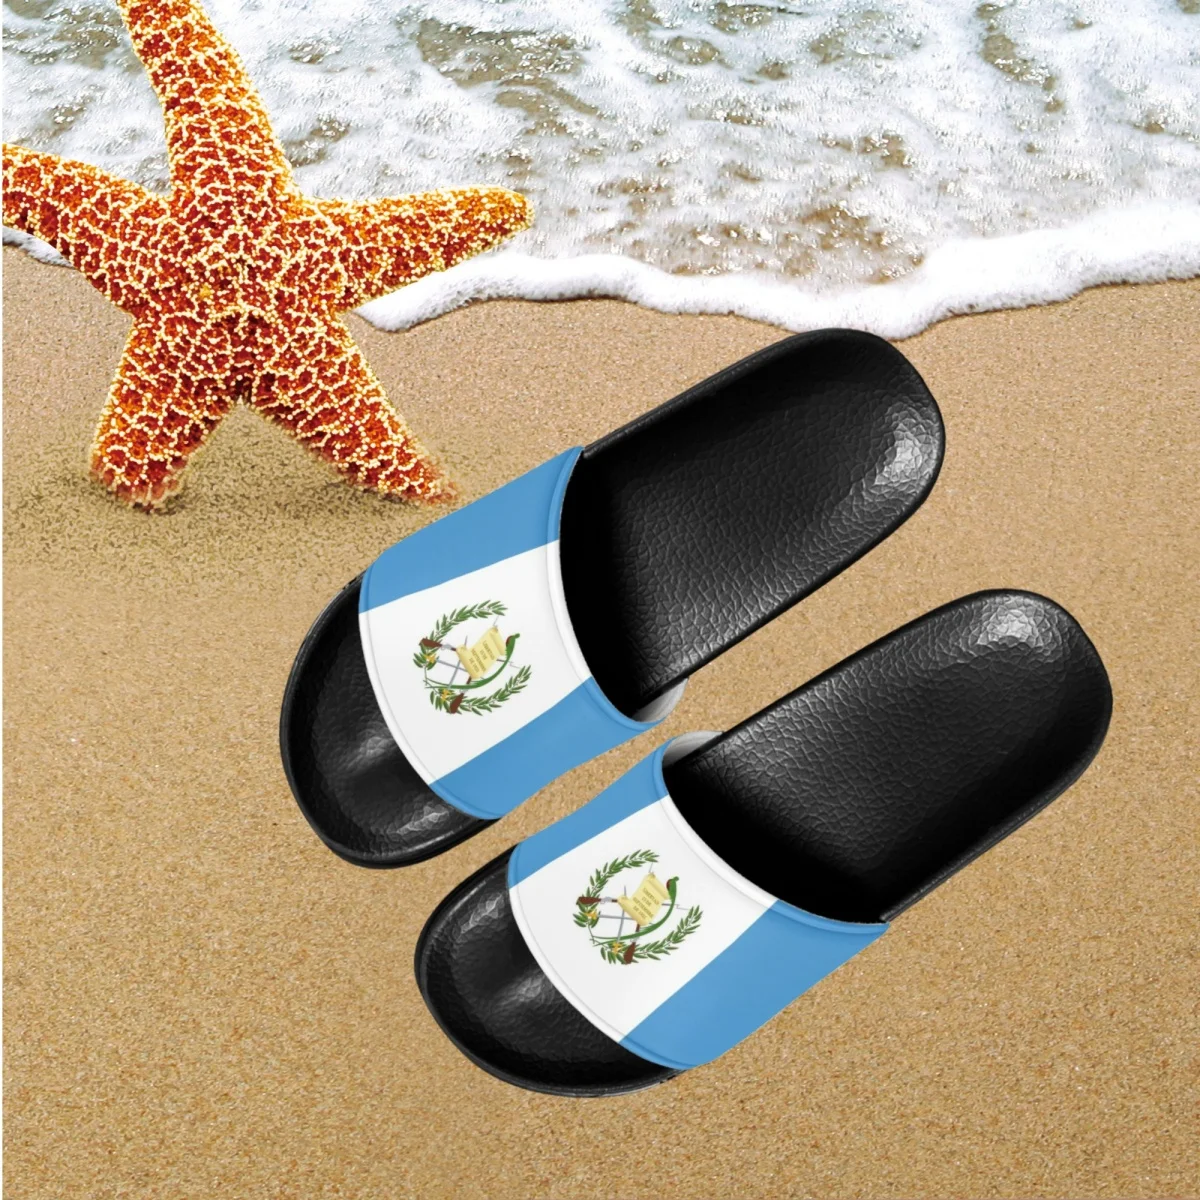 

Шлепанцы женские для дома и пляжа, брендовые дизайнерские модные летние тапочки с флагом Гватемалы, сланцы для девочек-подростков, тапки для ванной комнаты